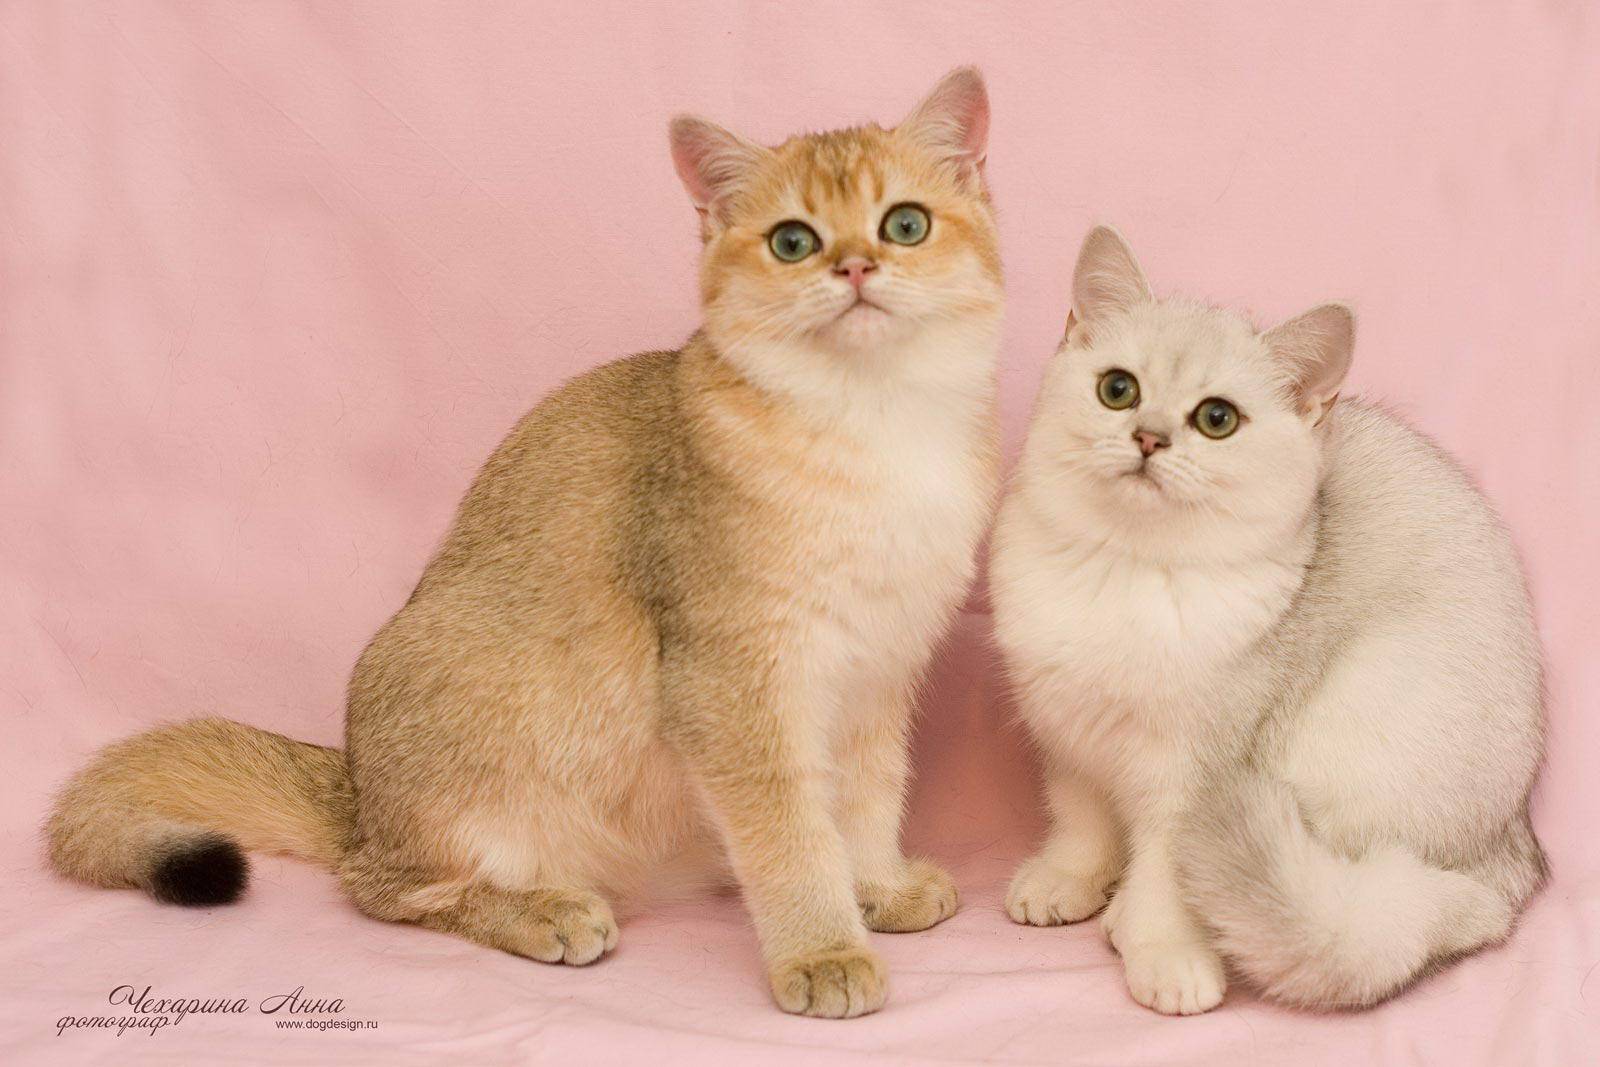 Рыжие британские кошки: стандарт окраса, варианты сочетания цветов и уход за шерстью